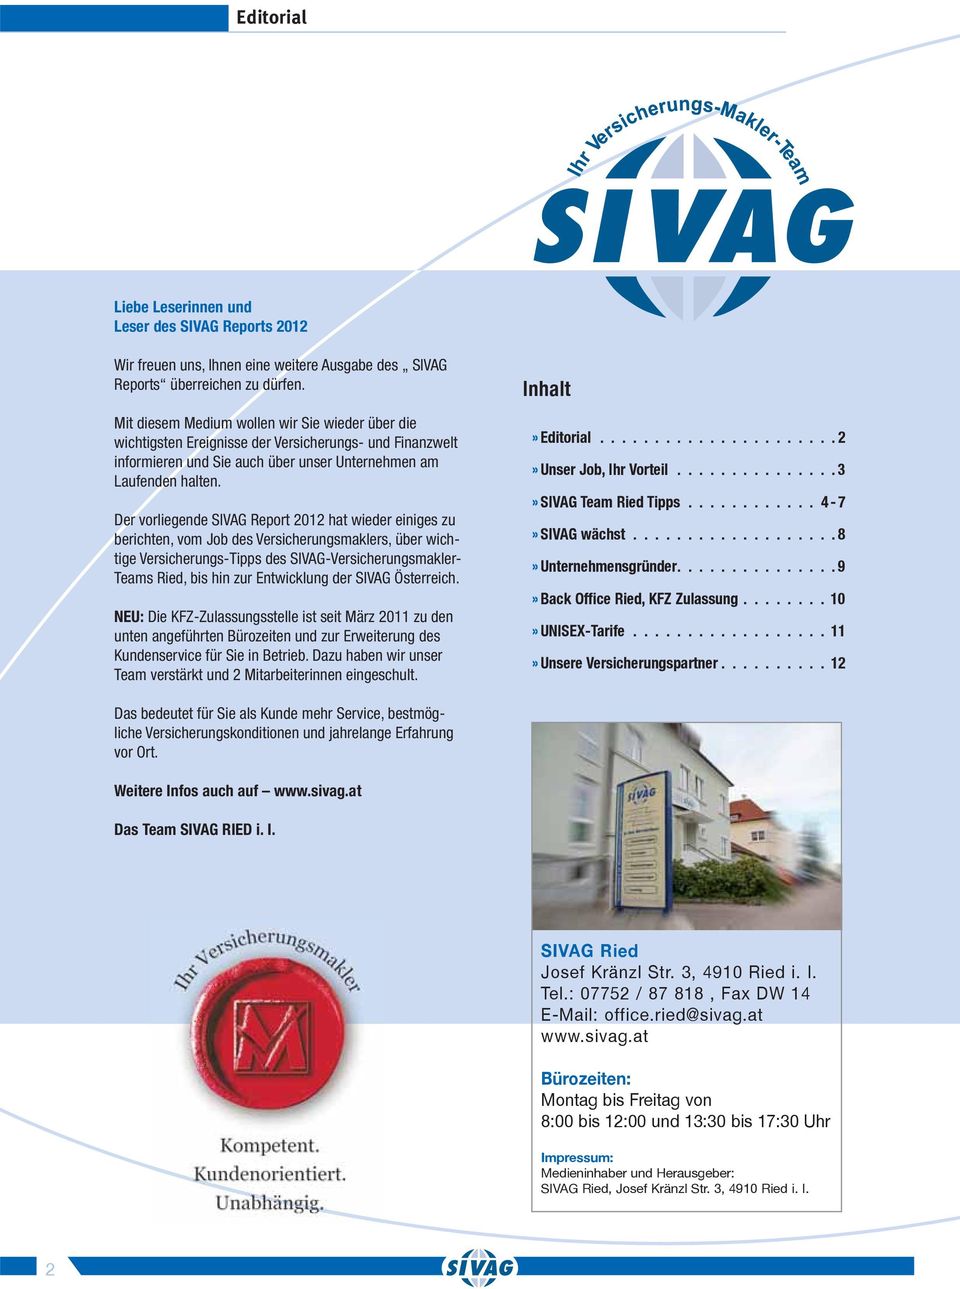 Der vorliegende SIVAG Report 2012 hat wieder einiges zu berichten, vom Job des Versicherungsmaklers, über wichtige Versicherungs-Tipps des SIVAG-Versicherungsmakler- Teams Ried, bis hin zur